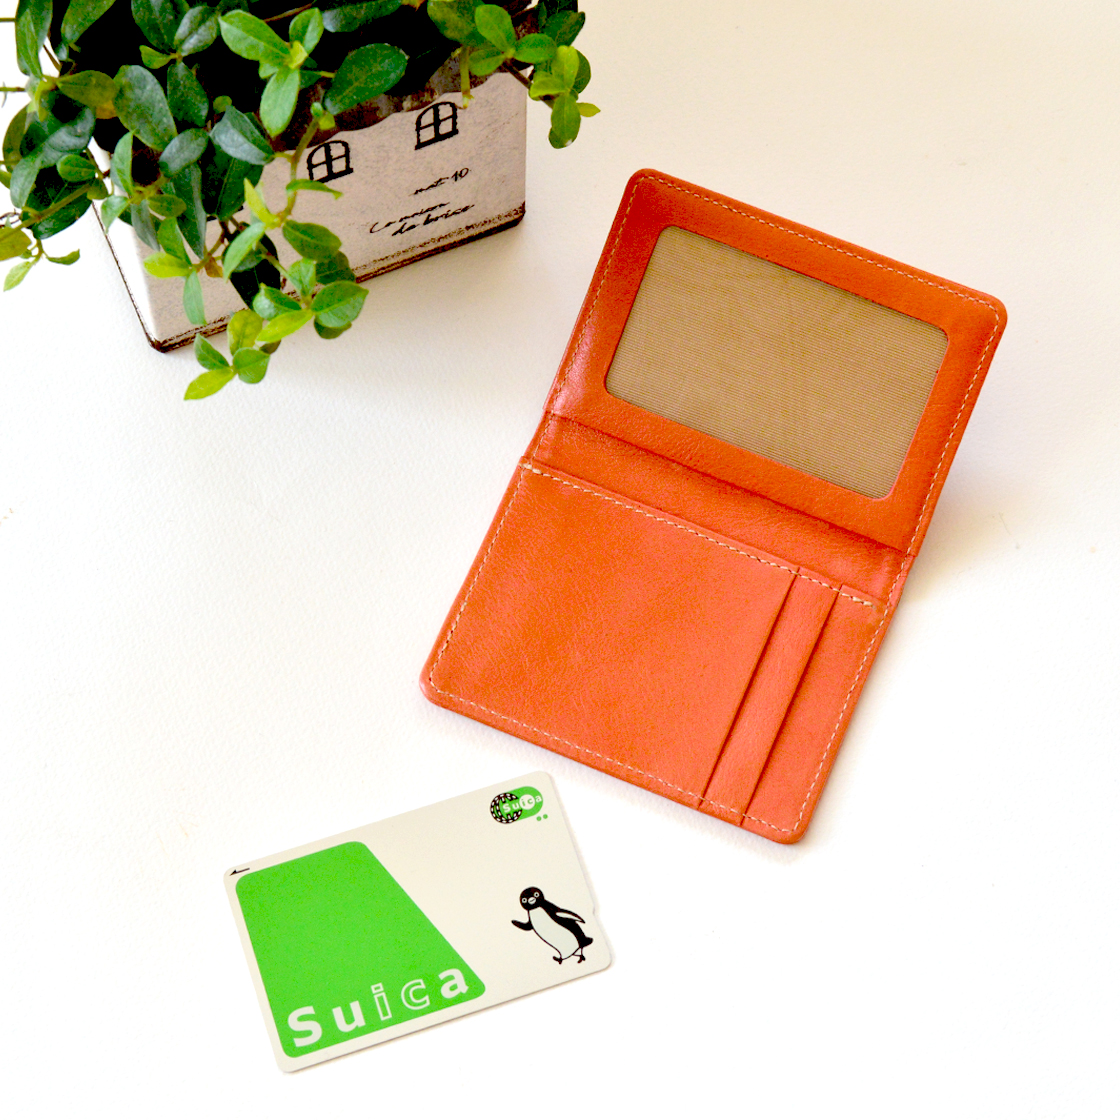 横型二つ折りパスケース ソフトレザー 本革 製パスケース カードケース Mk 3011 S Iichi ハンドメイド クラフト作品 手仕事品の通販